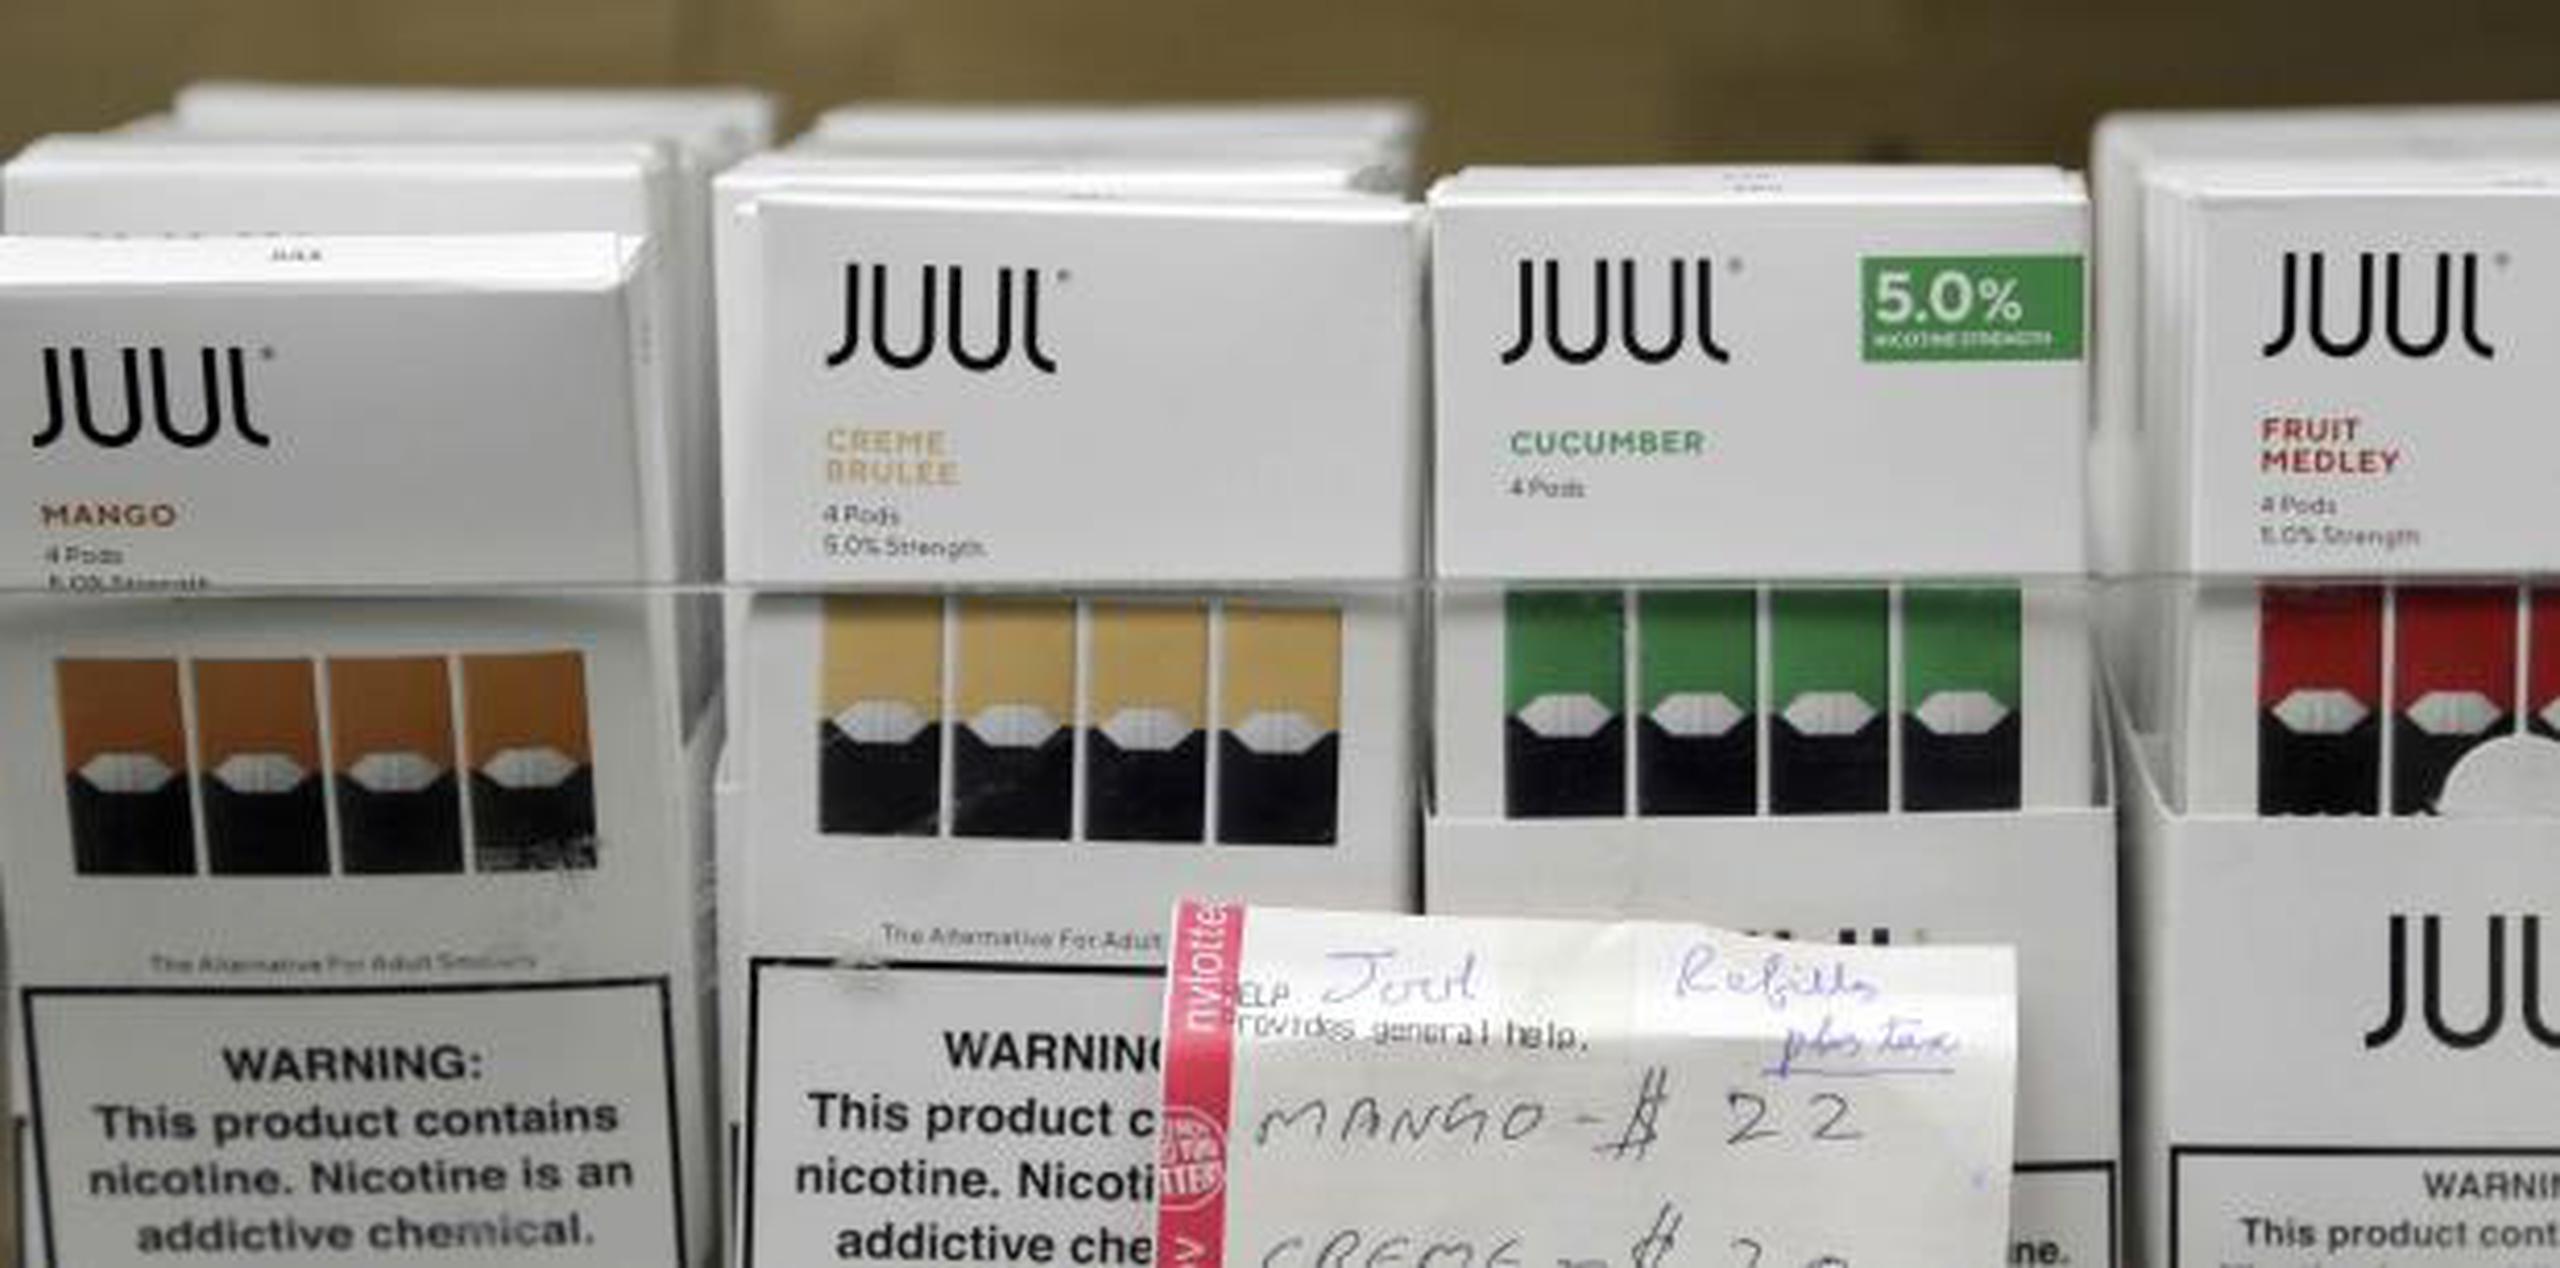 La empresa con sede en San Francisco también enfrenta demandas presentadas por consumidores adultos y menores de edad que aseguran haber adquirido una adicción a la nicotina a través de sus productos. (AP)